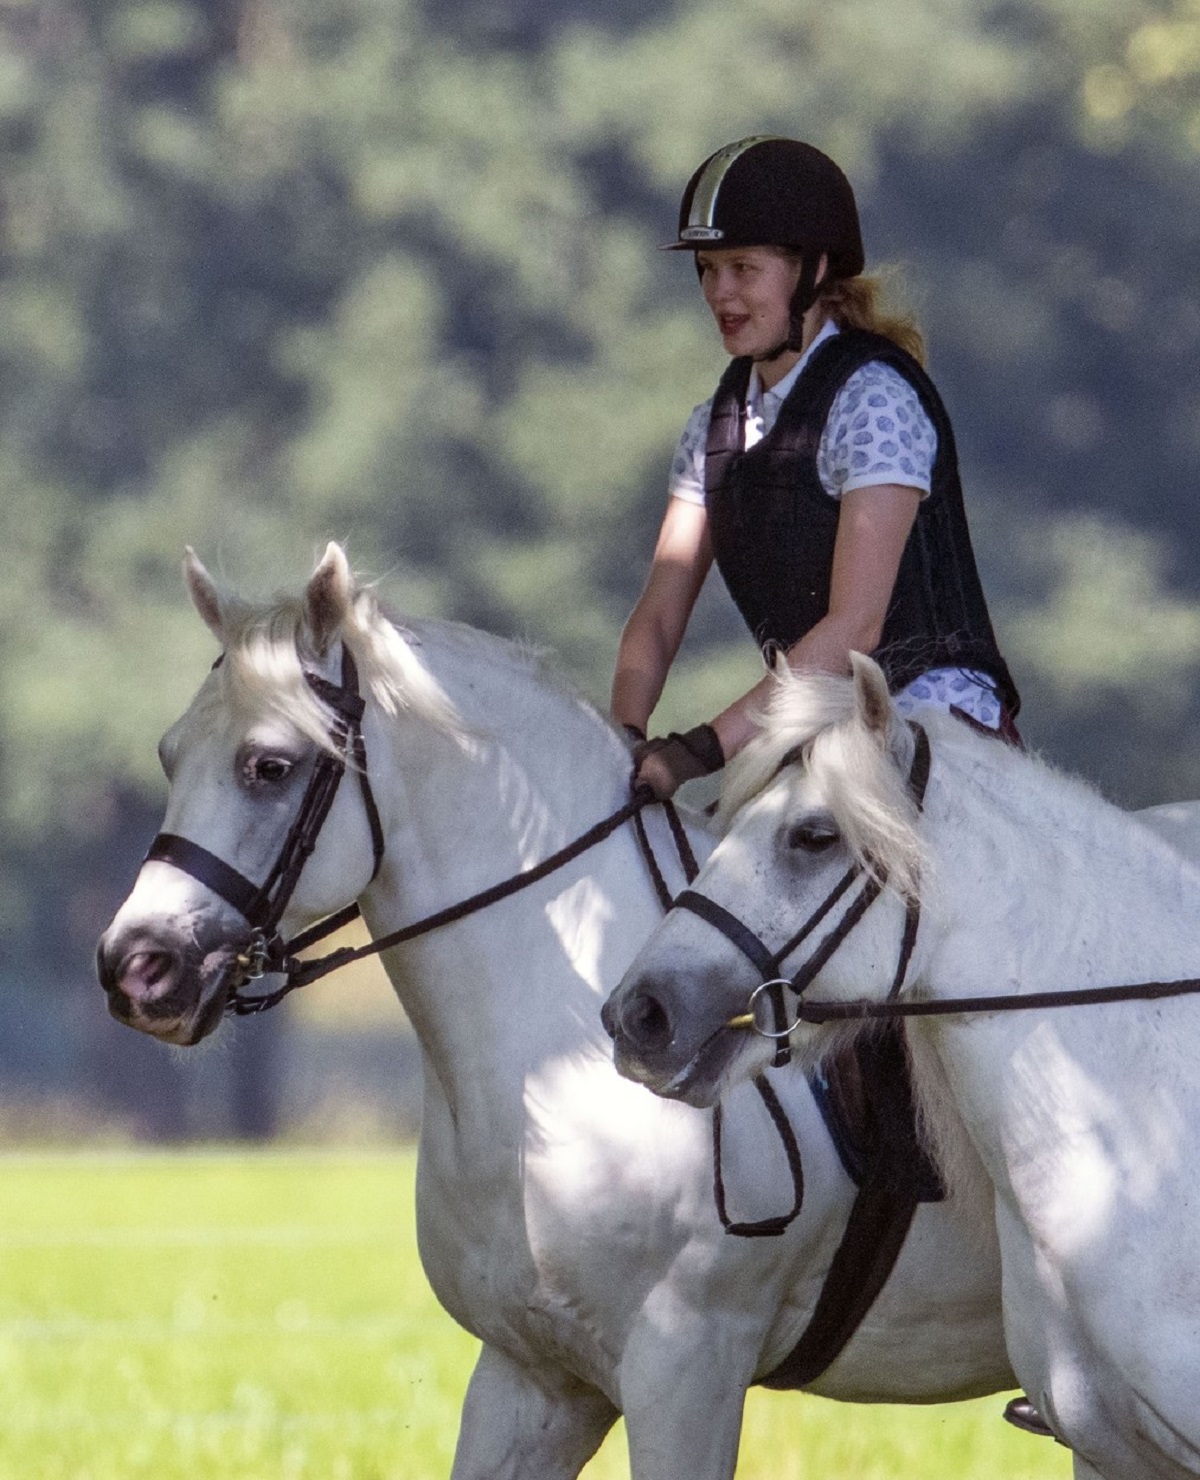 Lady Louise Windsor în trimp ce se află pe un cal și poartă o cască de protecție specială